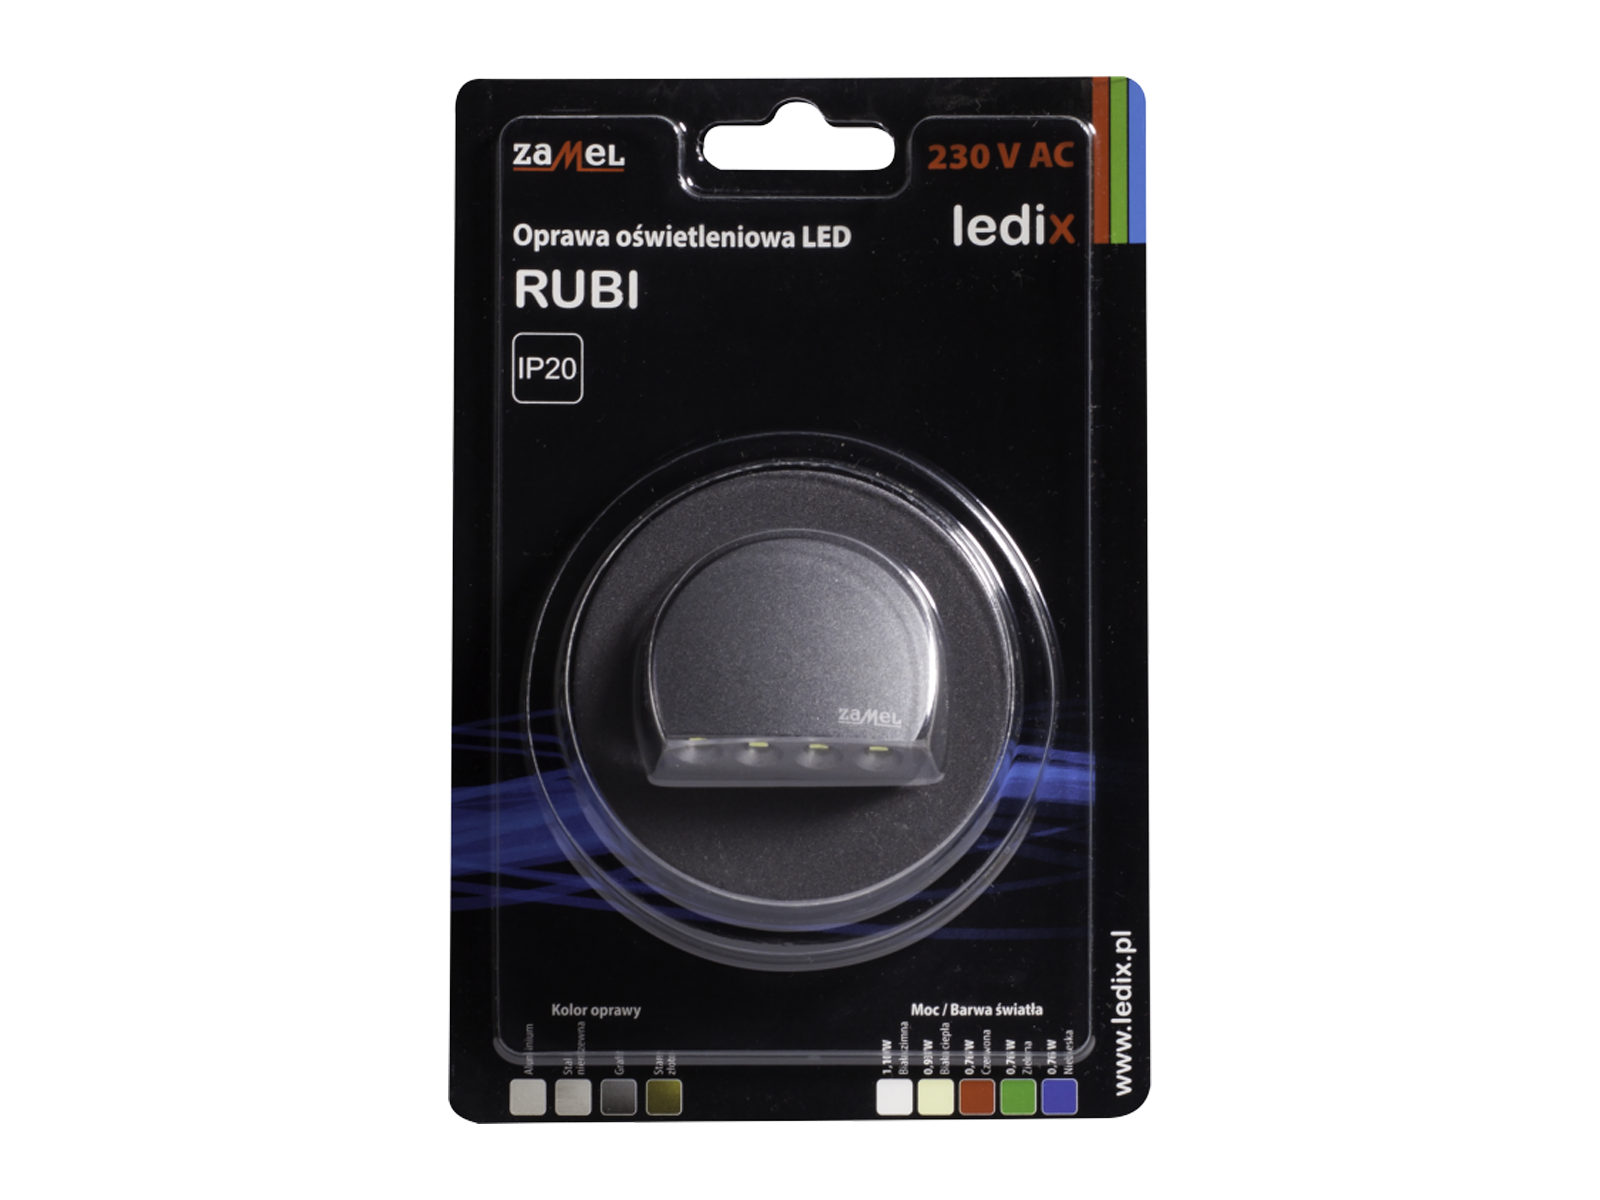 Svítidlo LED pod omítku LEDIX RUBI 230V AC, grafit, studená bílá, IP20